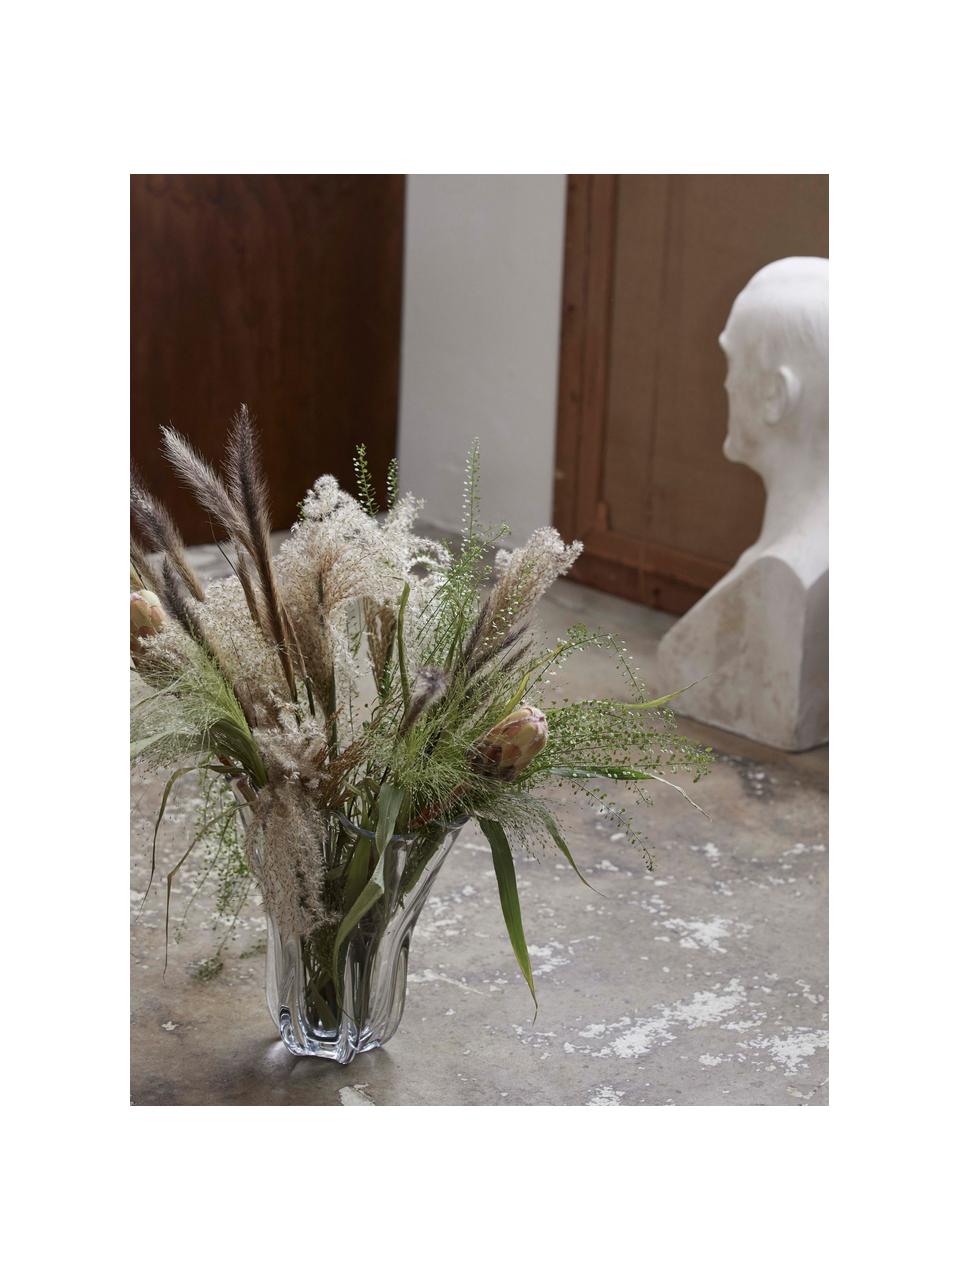 Skleněná váza Komnio, V 27 cm, Sklo, Transparentní, Ø 22 cm, V 27 cm